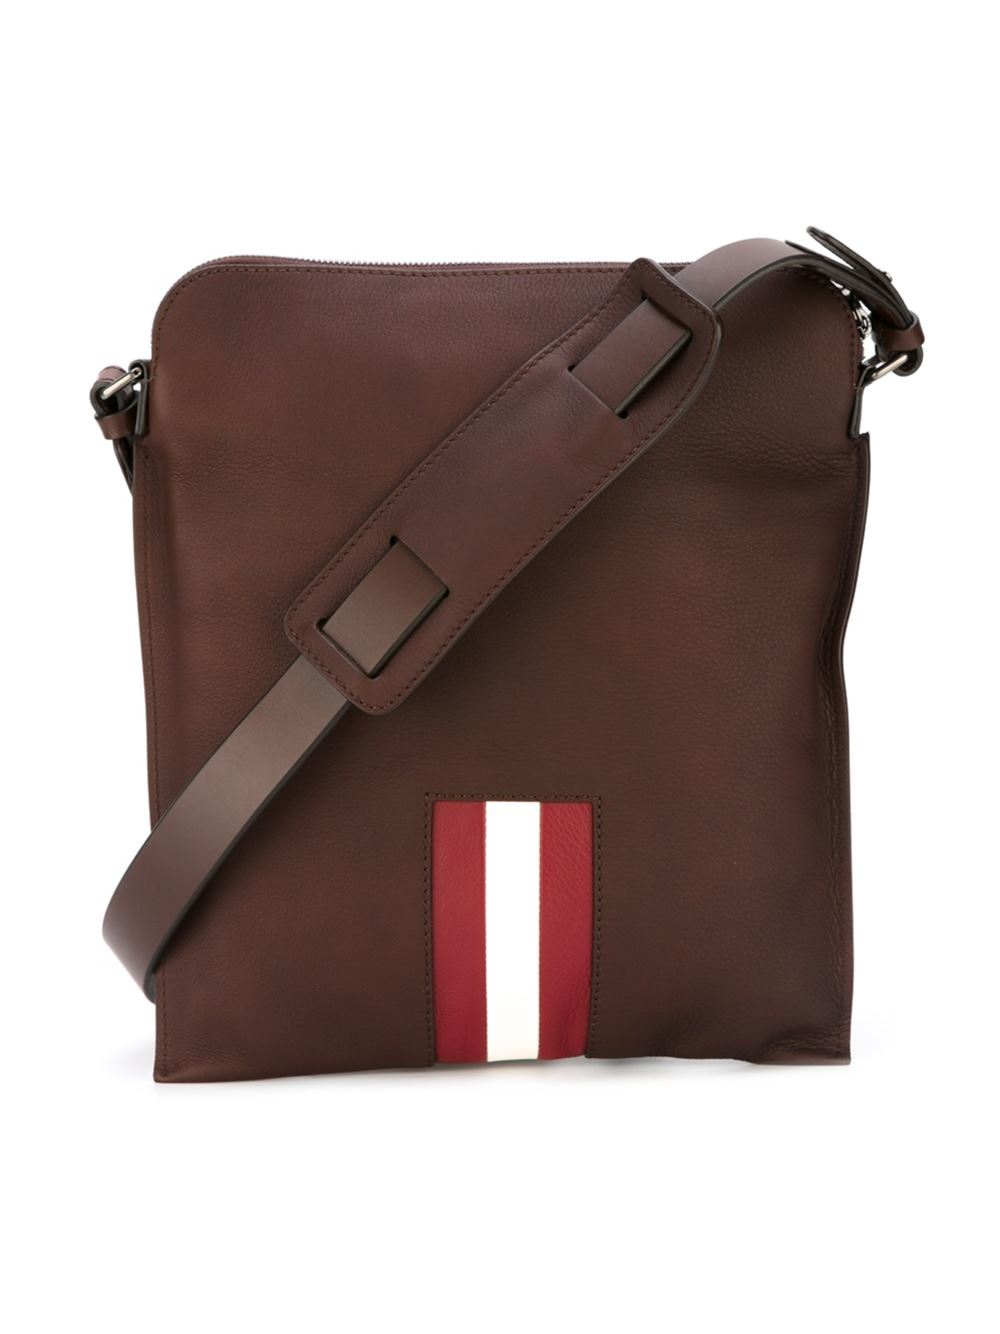 Bally Leather Shoulder Bag in Brown for Men - Lyst